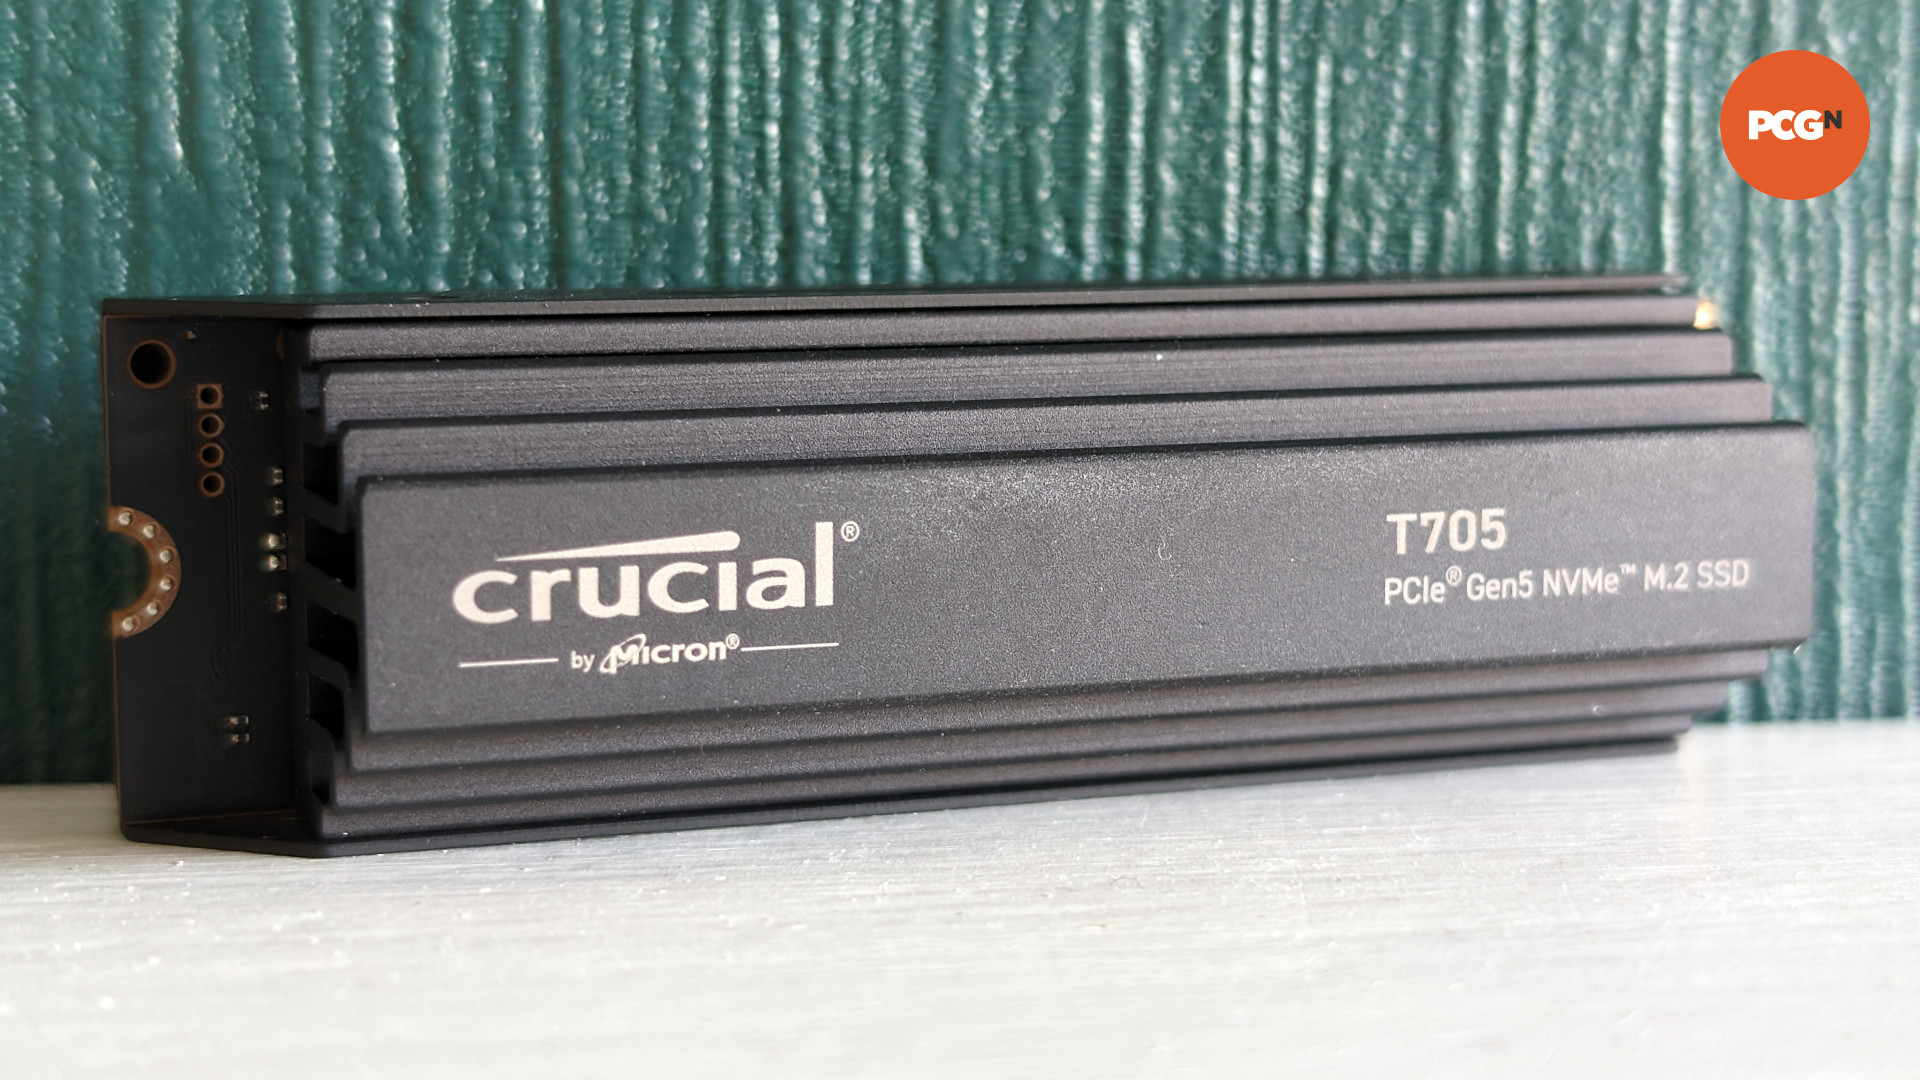 SSD Crucial T705 posé sur une surface blanche sur fond vert